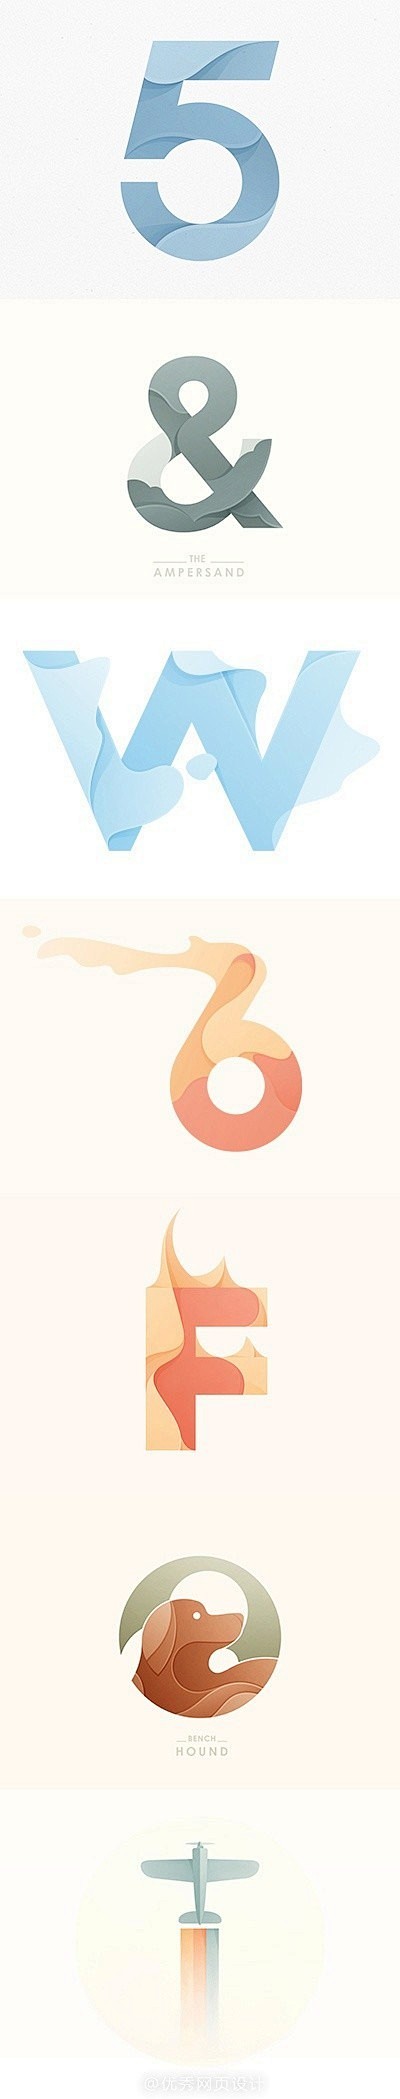 【Logo设计】印尼人气设计师Yoga ...